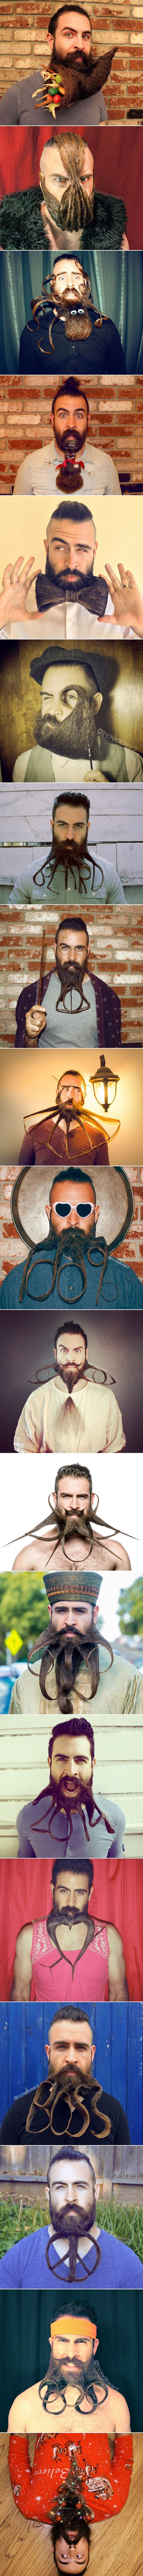 Čovjek koji oblikuje bradu u nevjerojatne oblike postao je hit na internetu